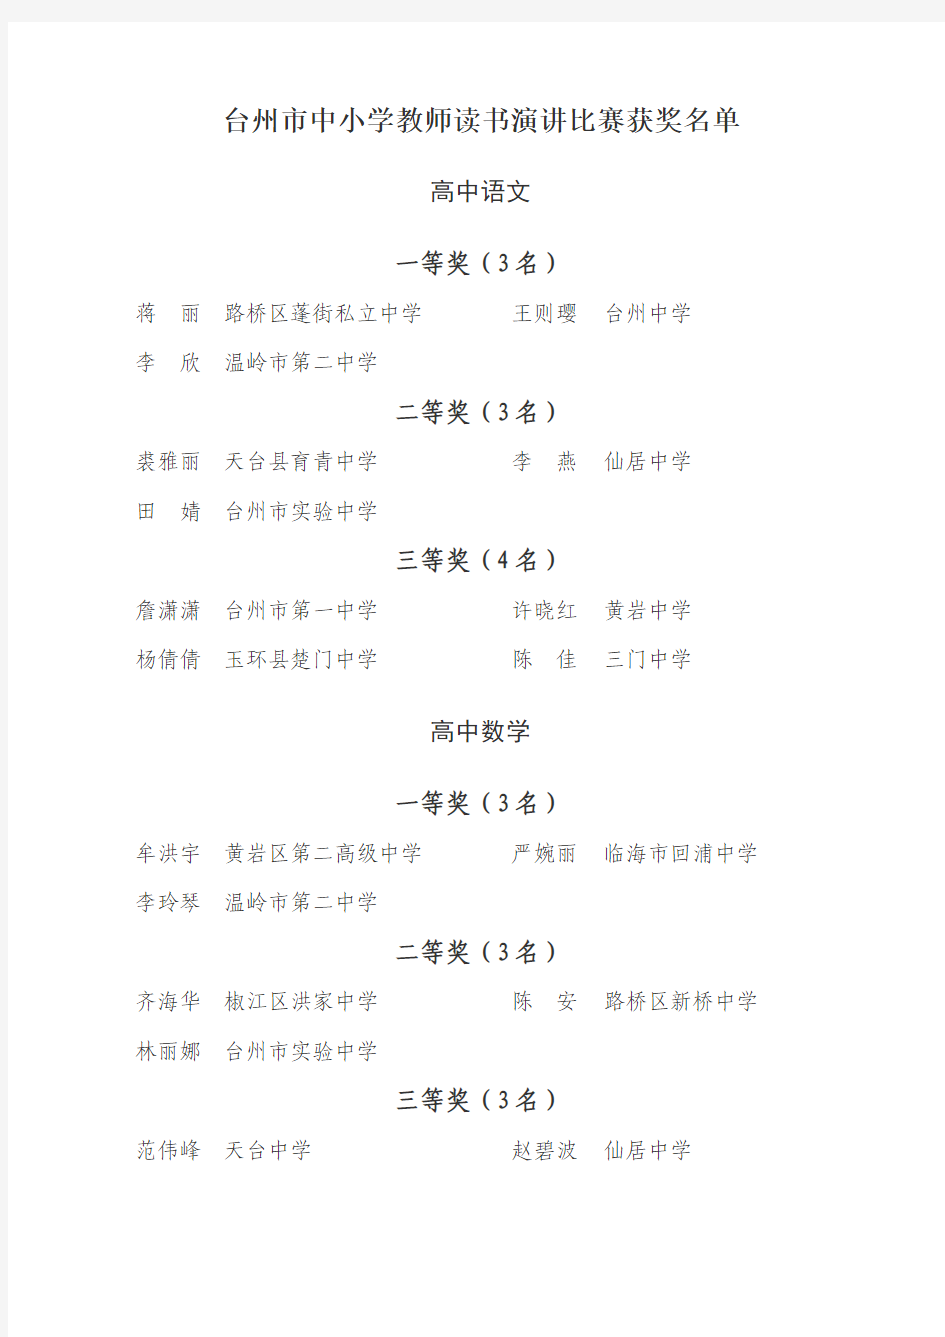 台州市中小学教师读书演讲比赛获奖名单